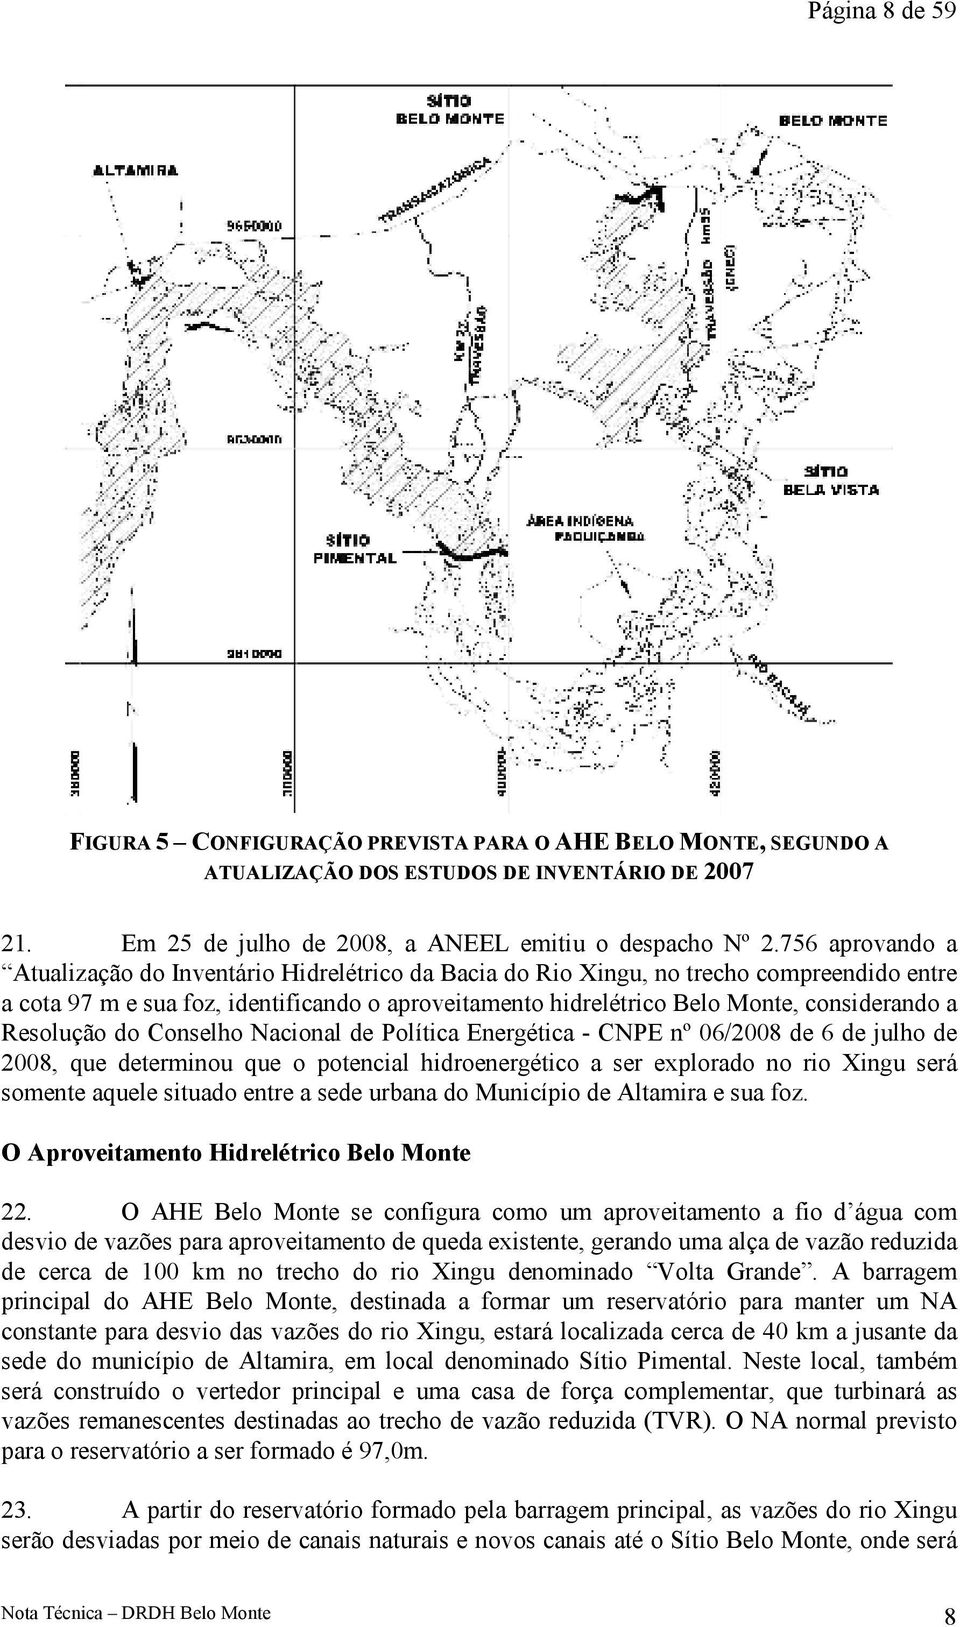 a Resolução do Conselho Nacional de Política Energética - CNPE nº 06/2008 de 6 de julho de 2008, que determinou que o potencial hidroenergético a ser explorado no rio Xingu será somente aquele